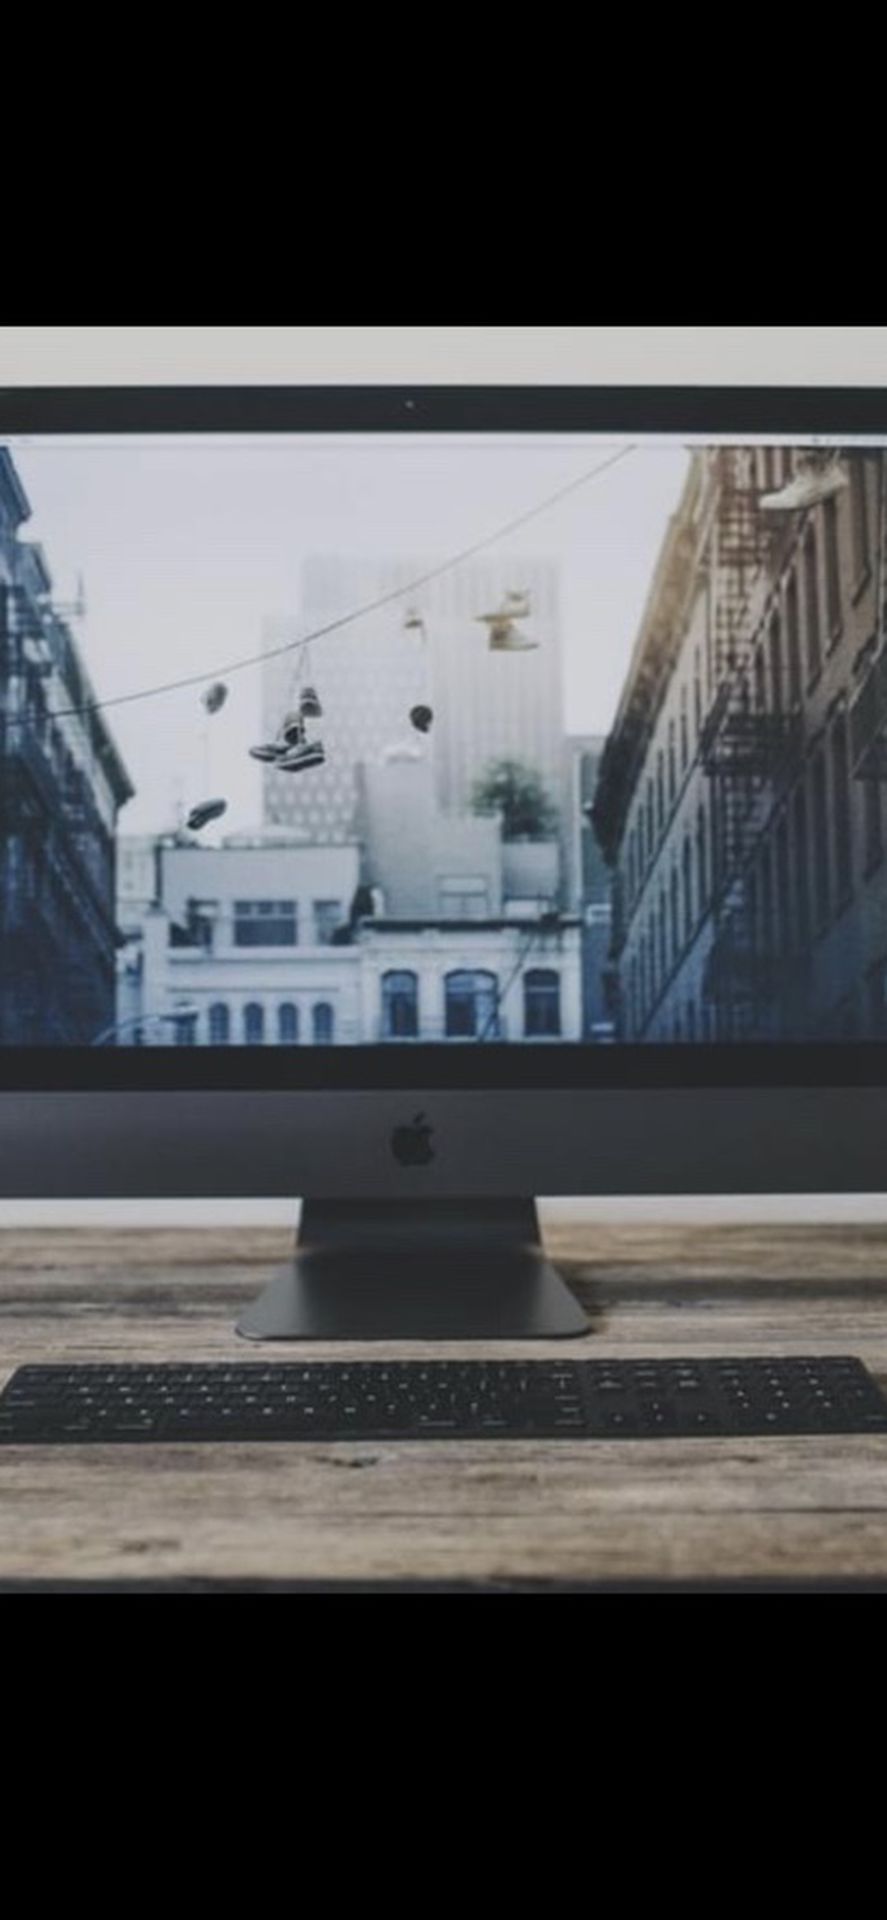 iMac Pro 5k retina With Apple Care